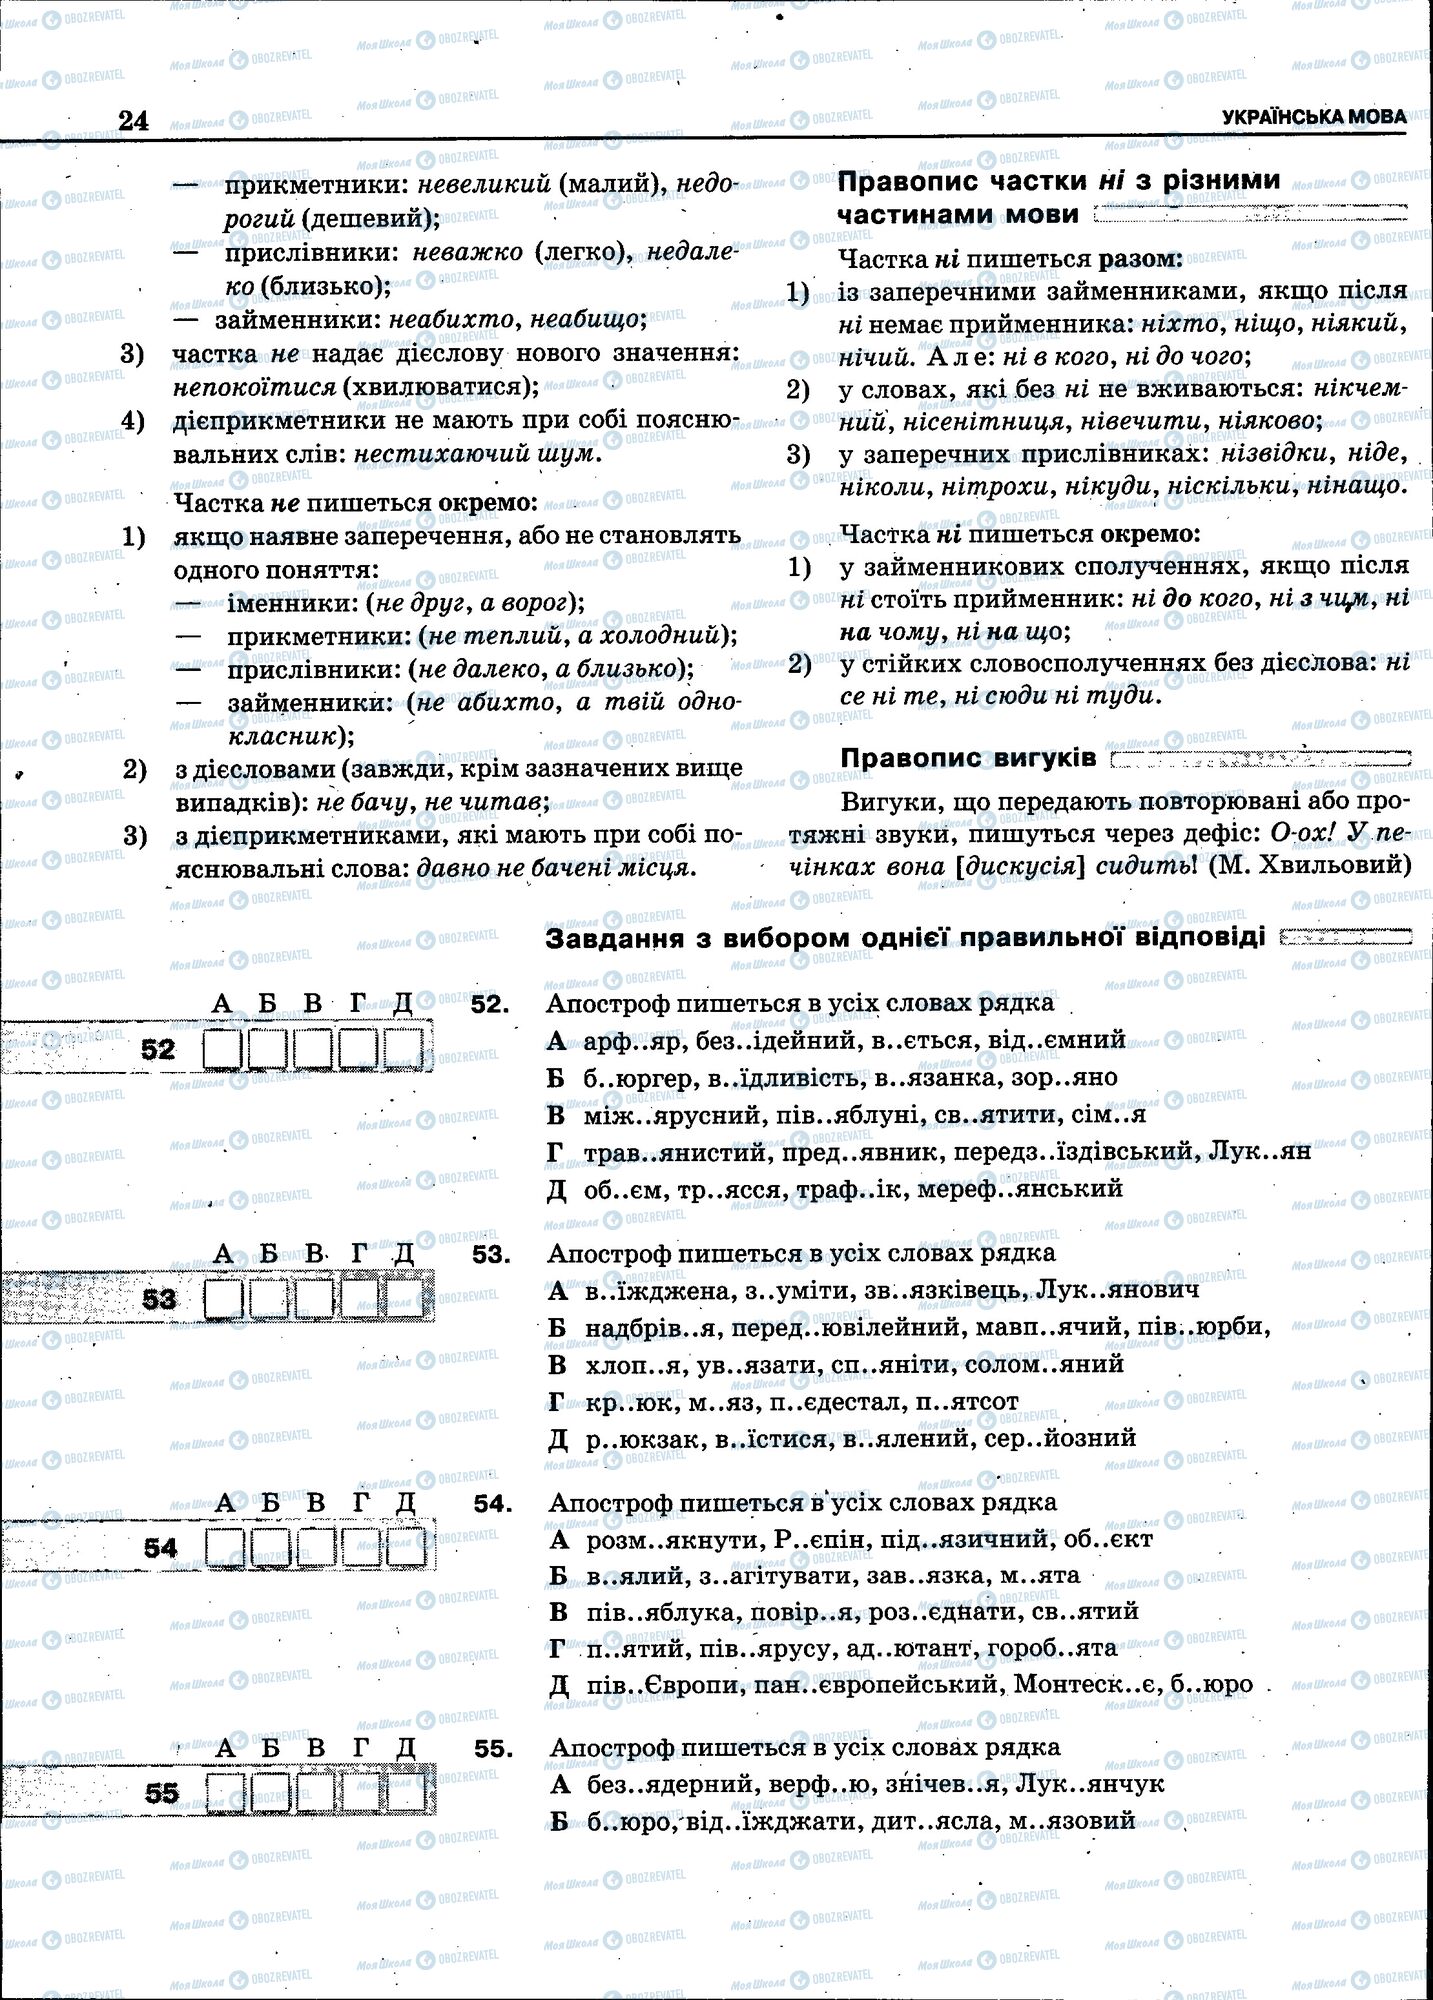 ЗНО Укр мова 11 класс страница 022